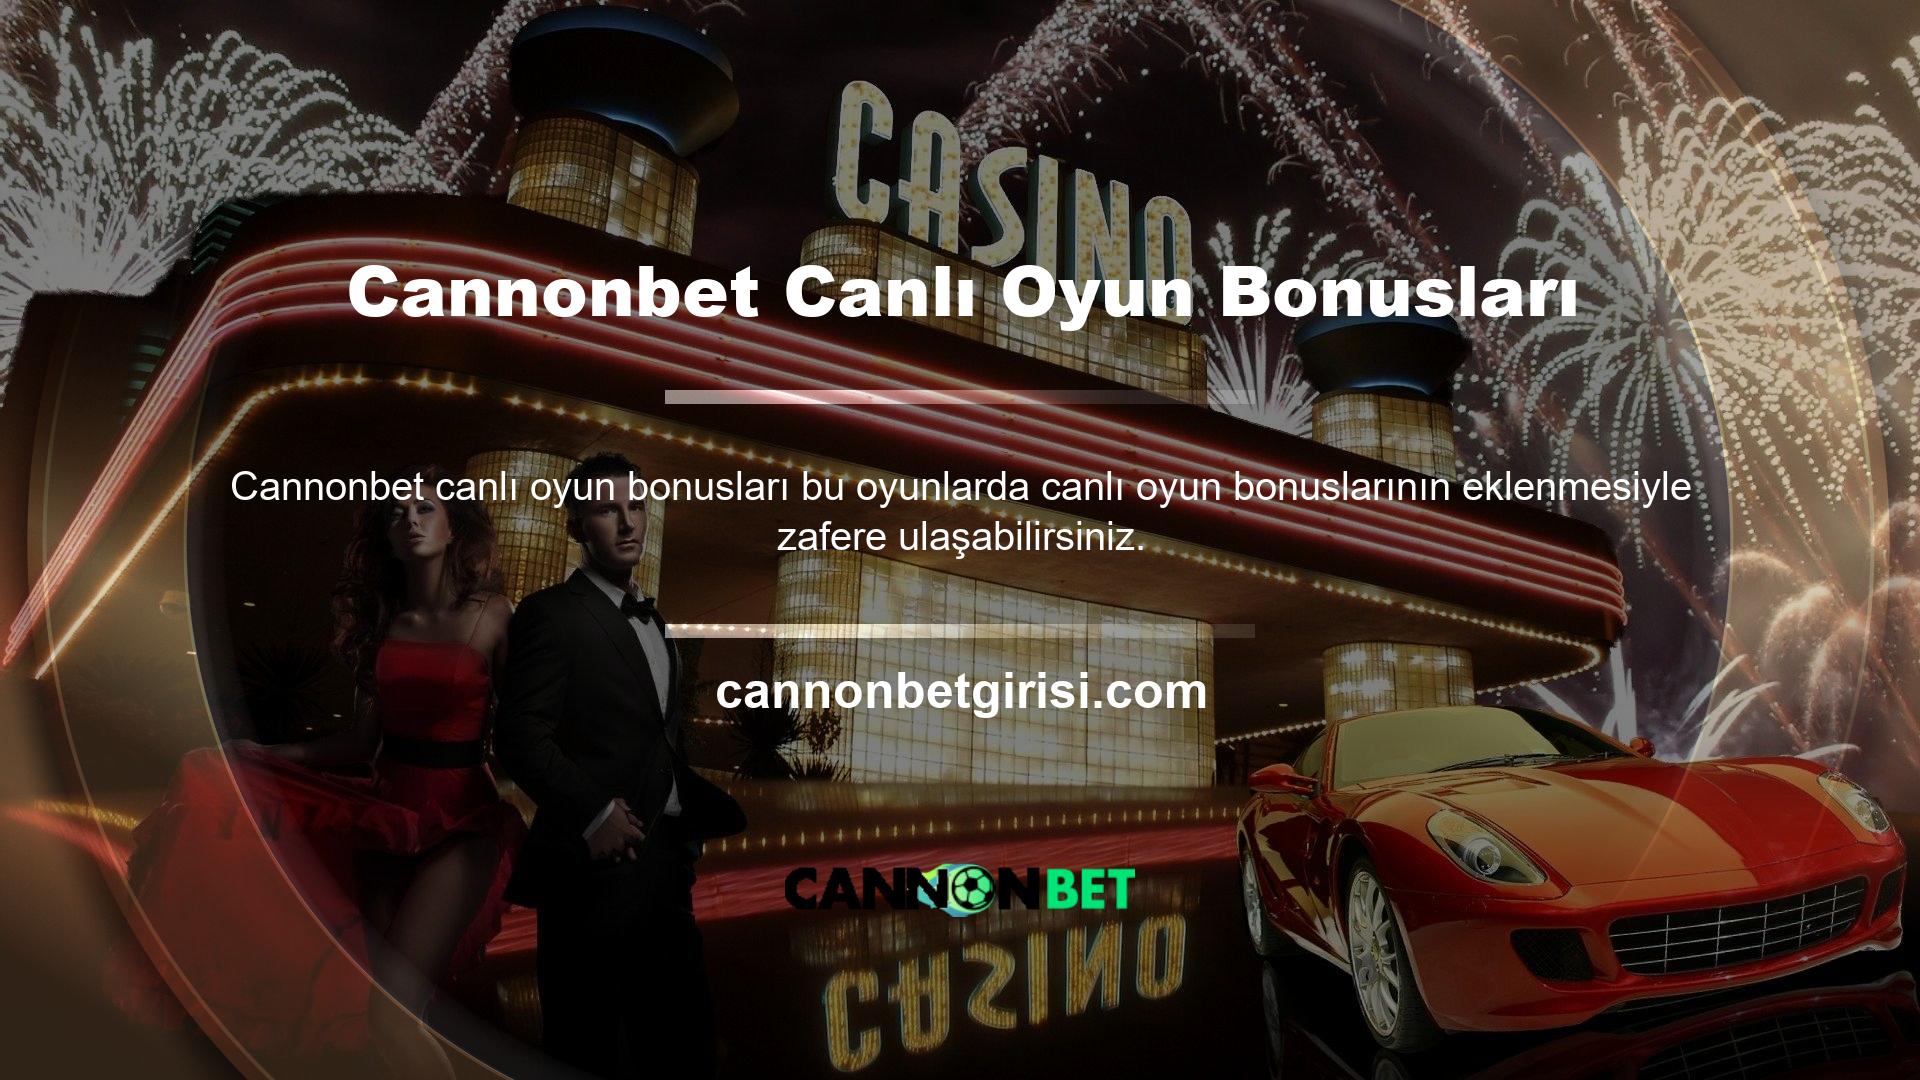 Cannonbet Casino, müşterilerini 10’dan fazla puan kazanmak gibi cömert teşviklerle ödüllendiren popüler bir çevrimiçi Casino platformudur